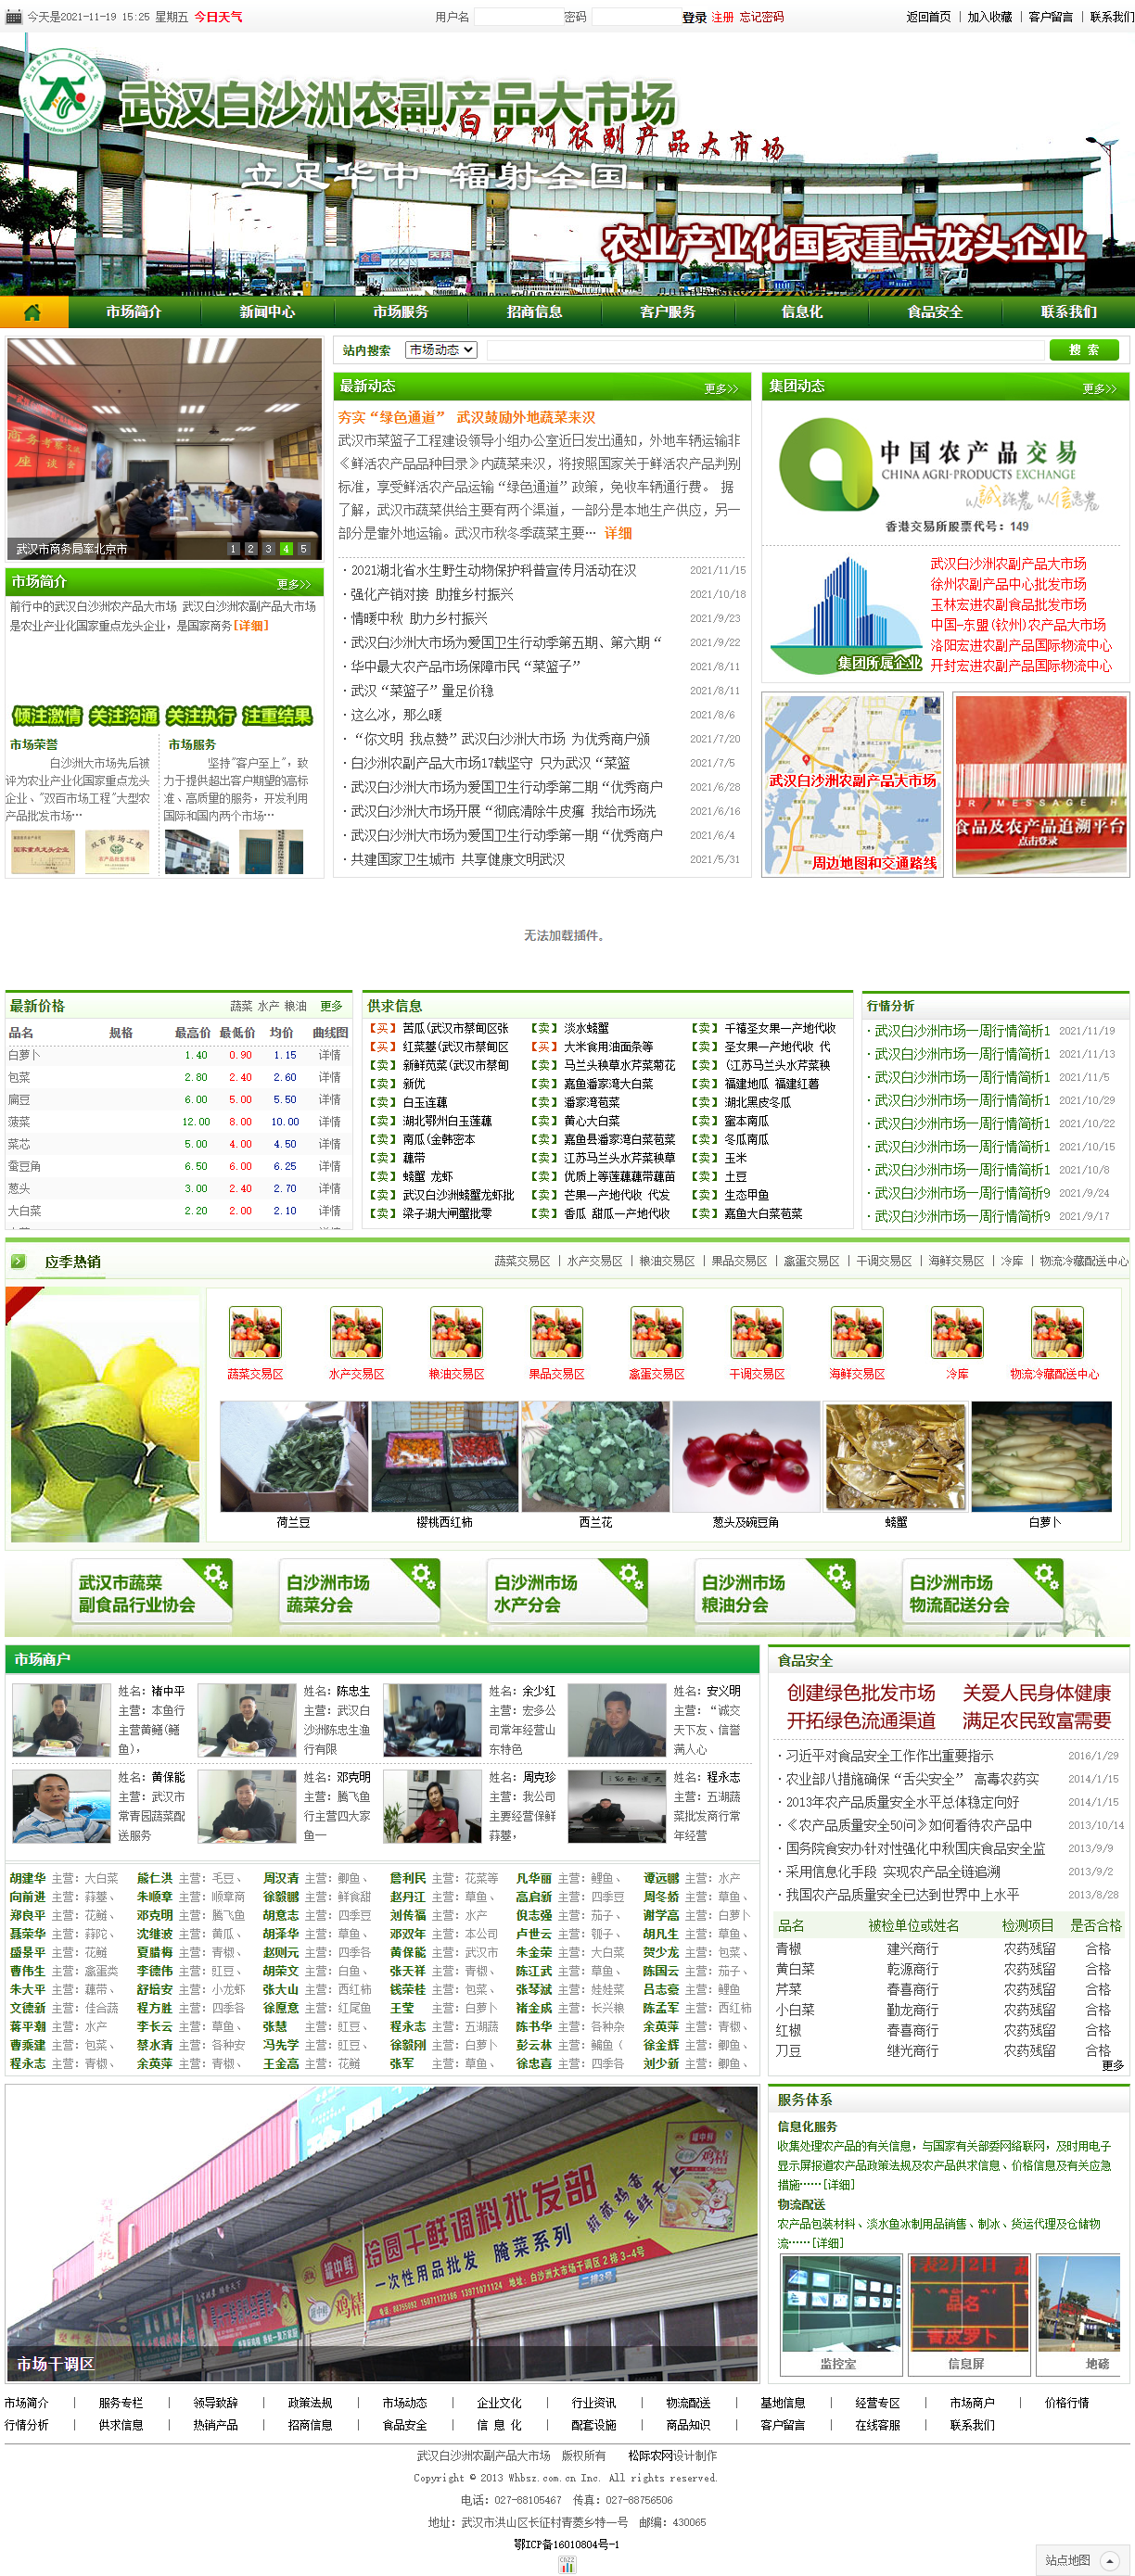 武汉白沙洲农副产品大市场有限公司网站案例